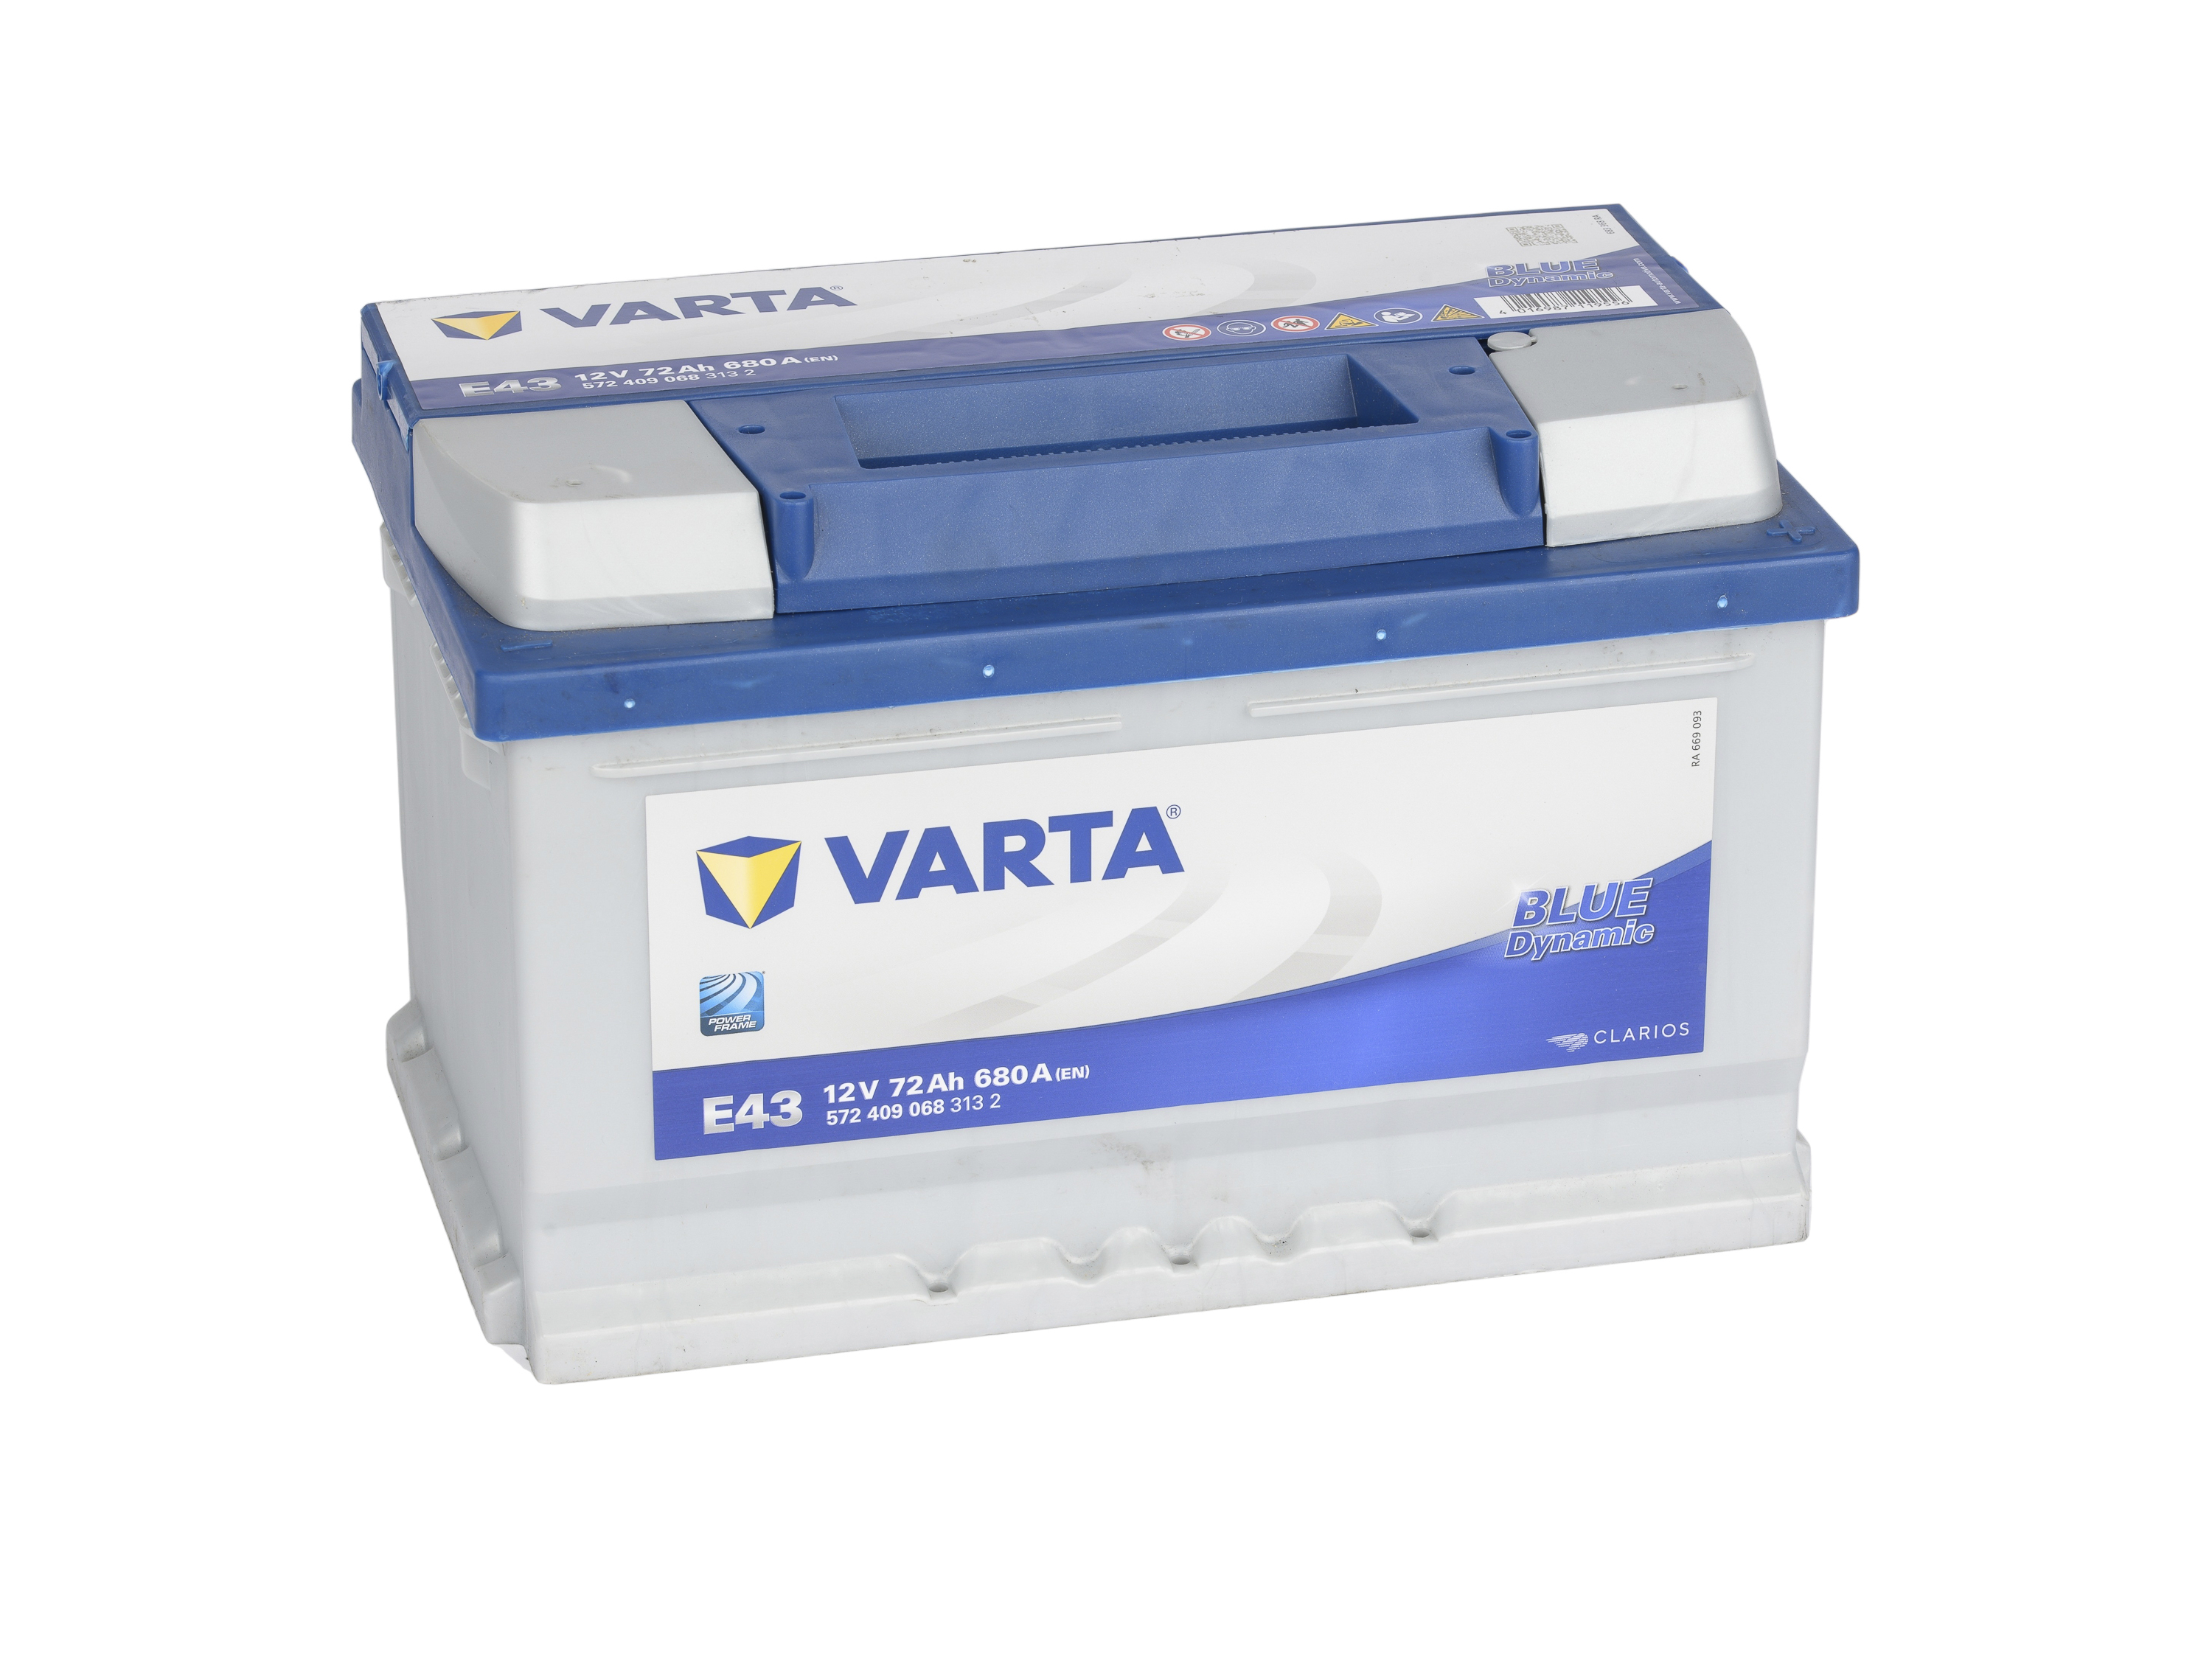  Varta Blue Dynamic E43 Batterie Voitures, 12 V 72Ah